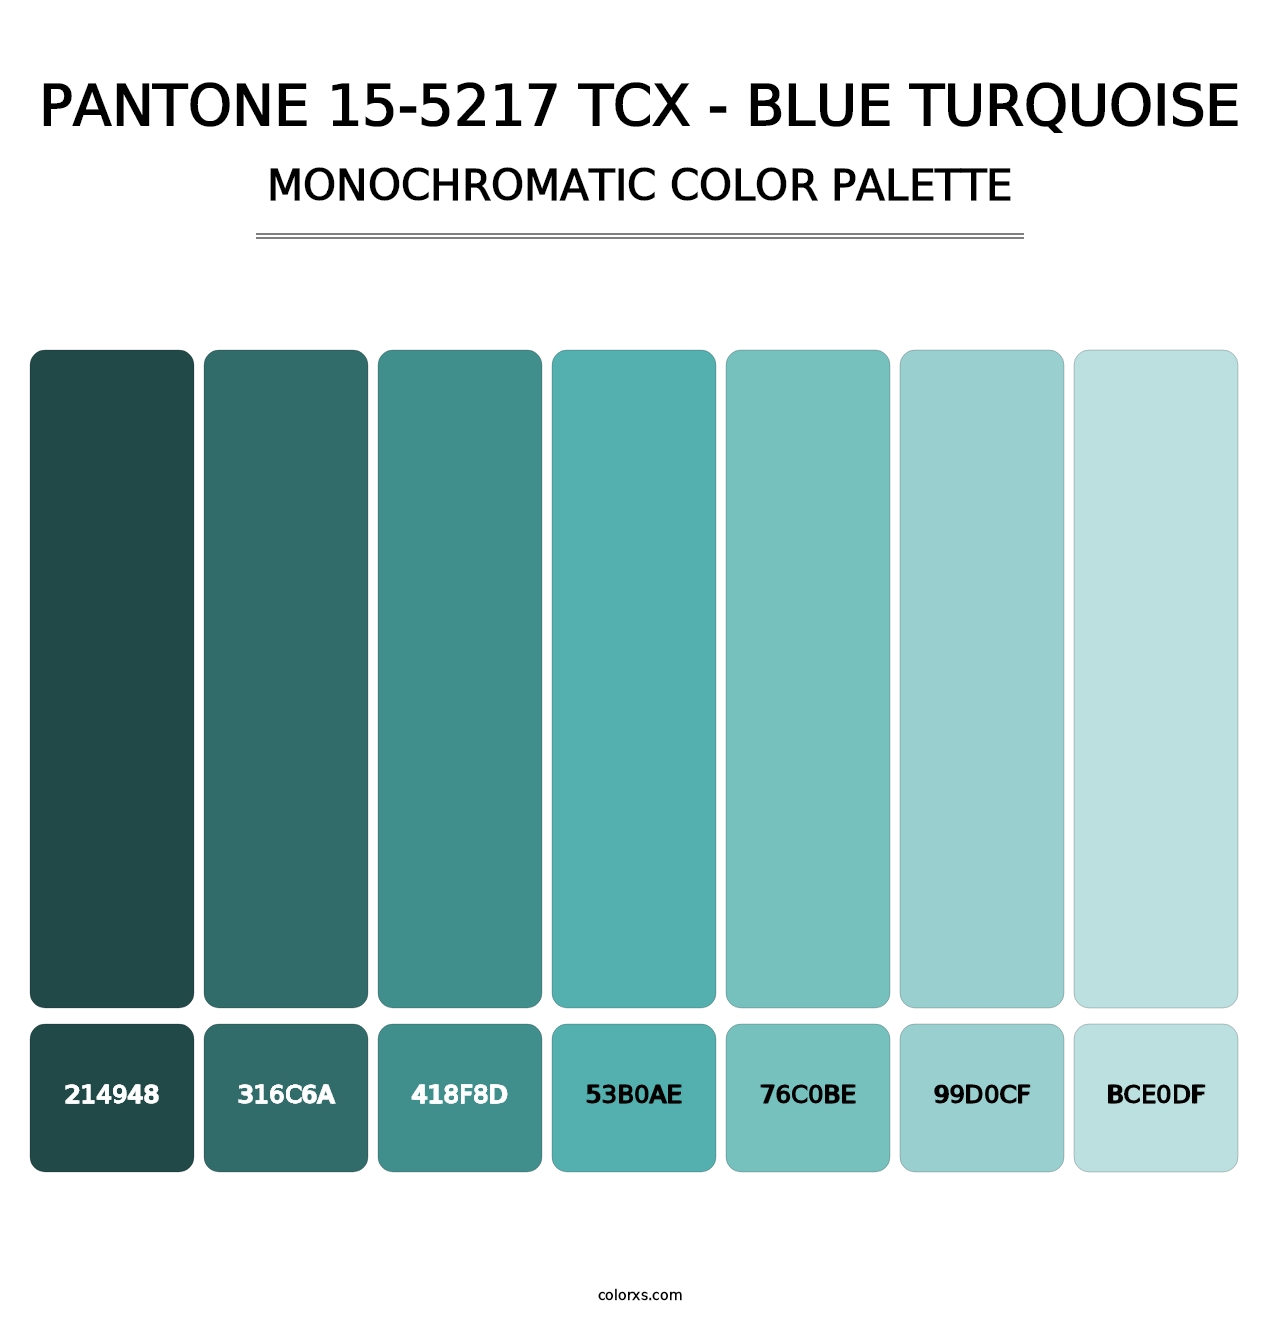 PANTONE 15-5217 TCX - Blue Turquoise - Monochromatic Color Palette